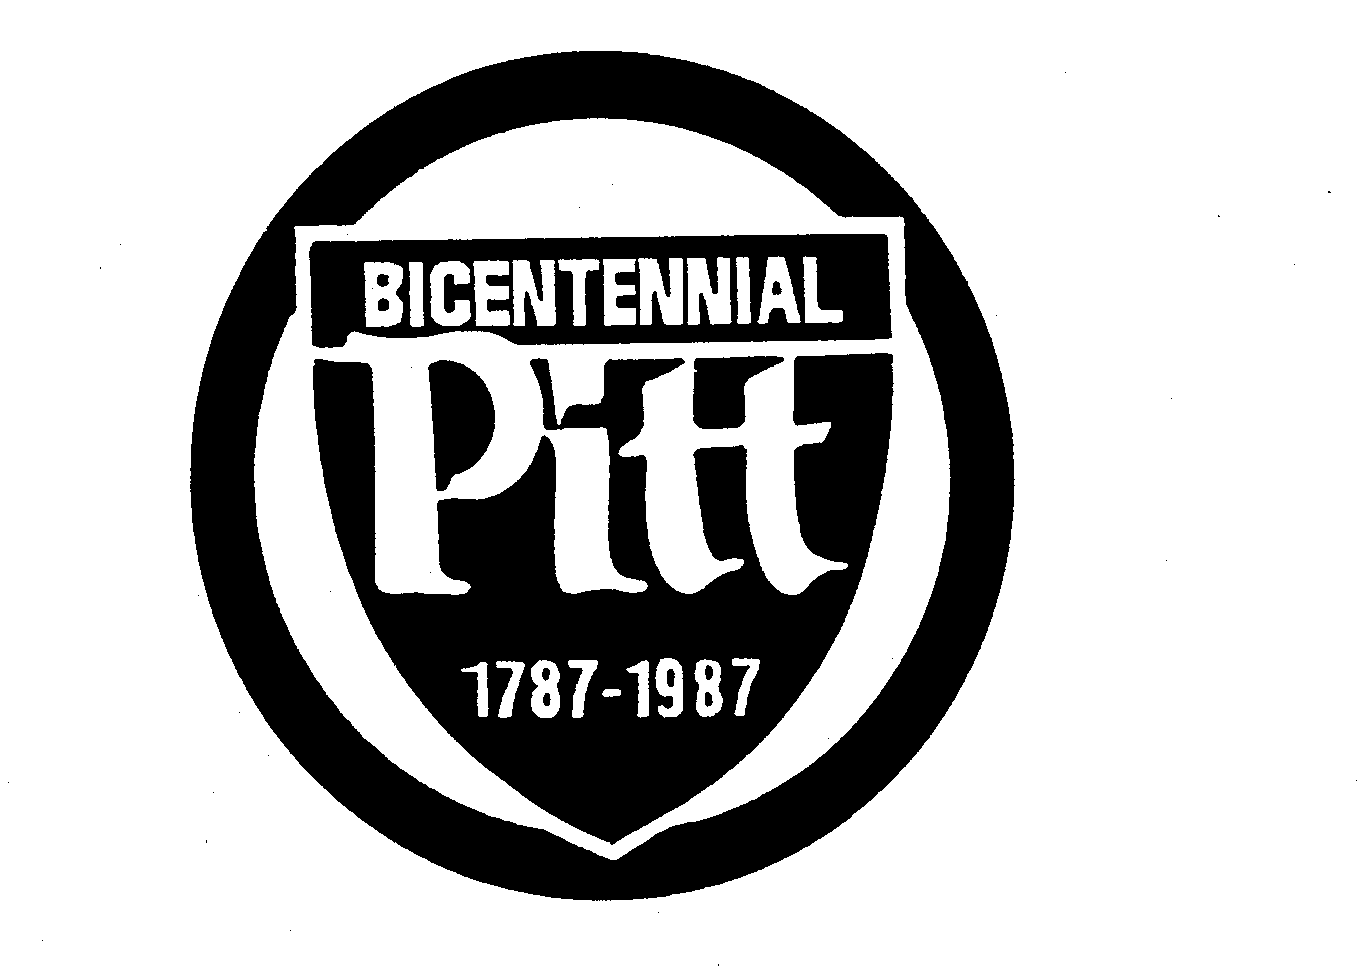 Trademark Logo BICENTENNIAL PITT 1787-1987